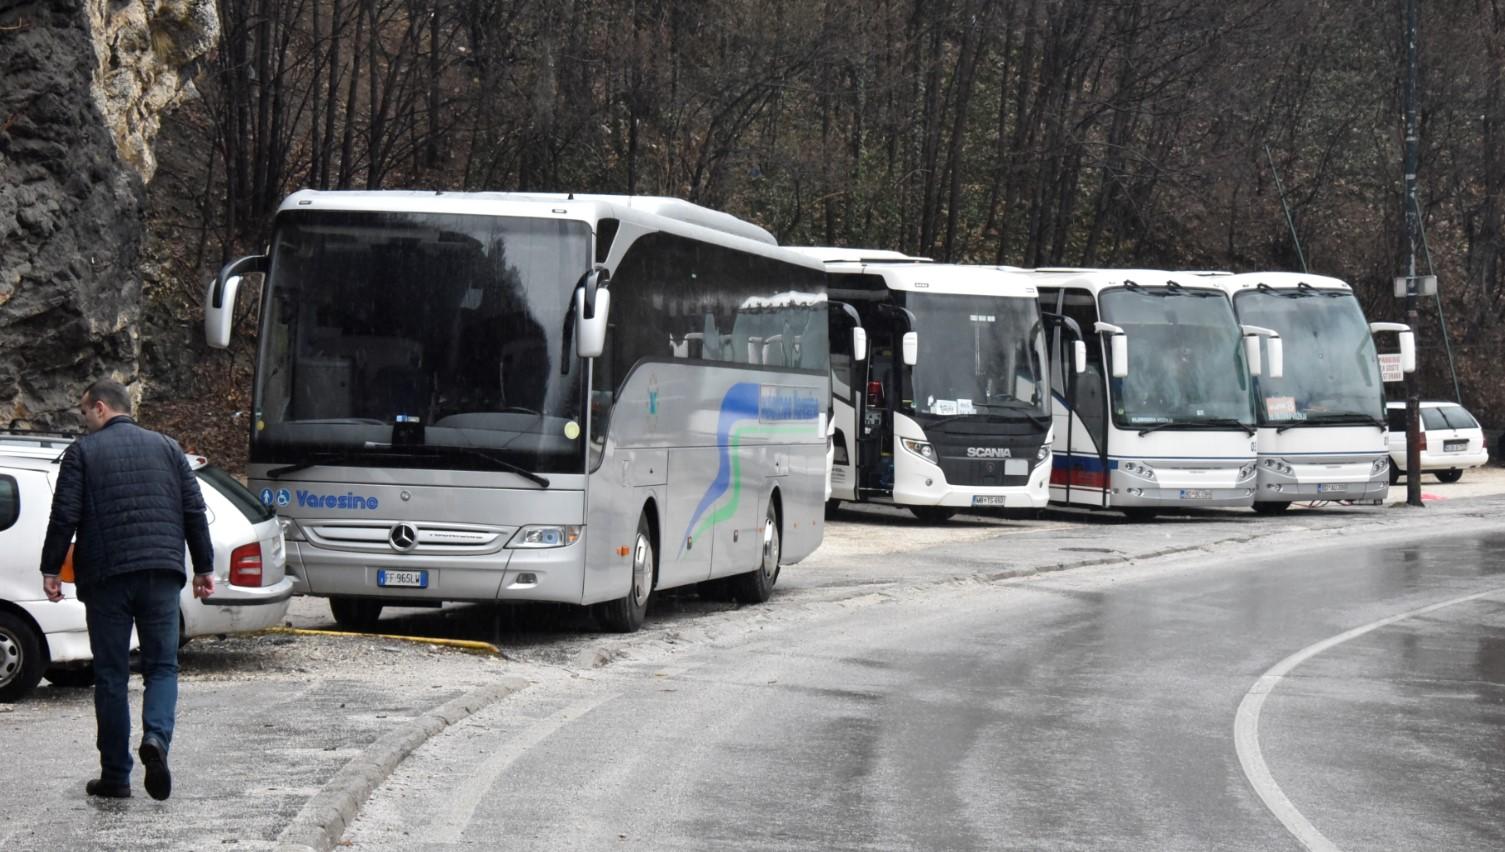 Nedostaje poseban parking: Turistički autobusi blokiraju centar Sarajeva i glavni ulaz u grad